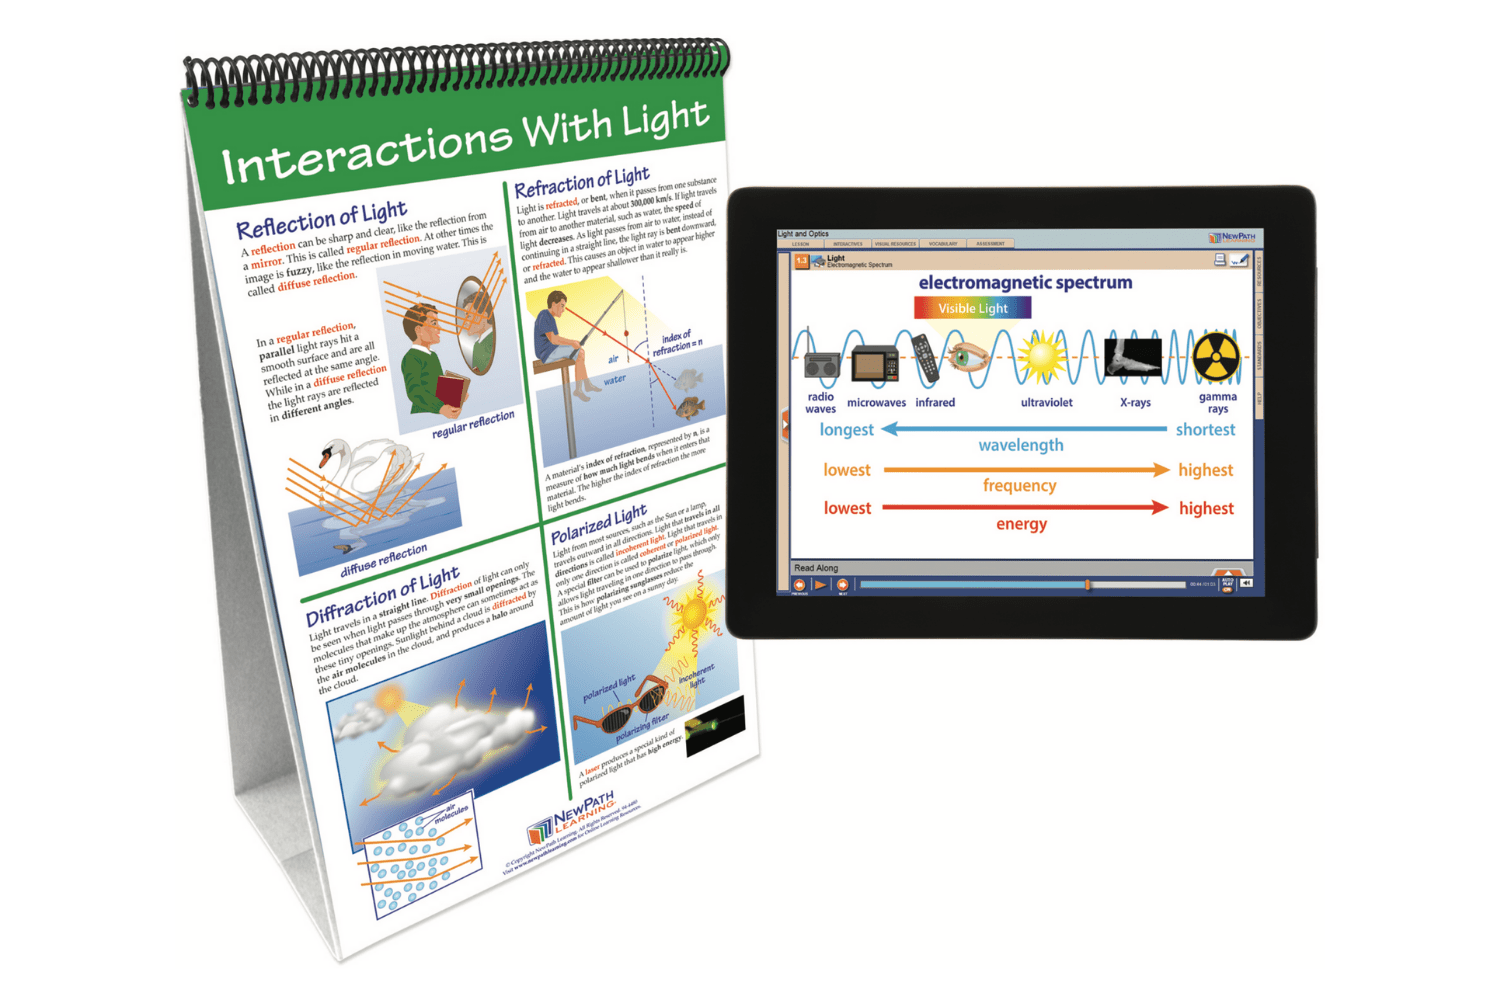 Arbor Scientific Light & Optics Flip Chart Set With Online Multimedia Lesson